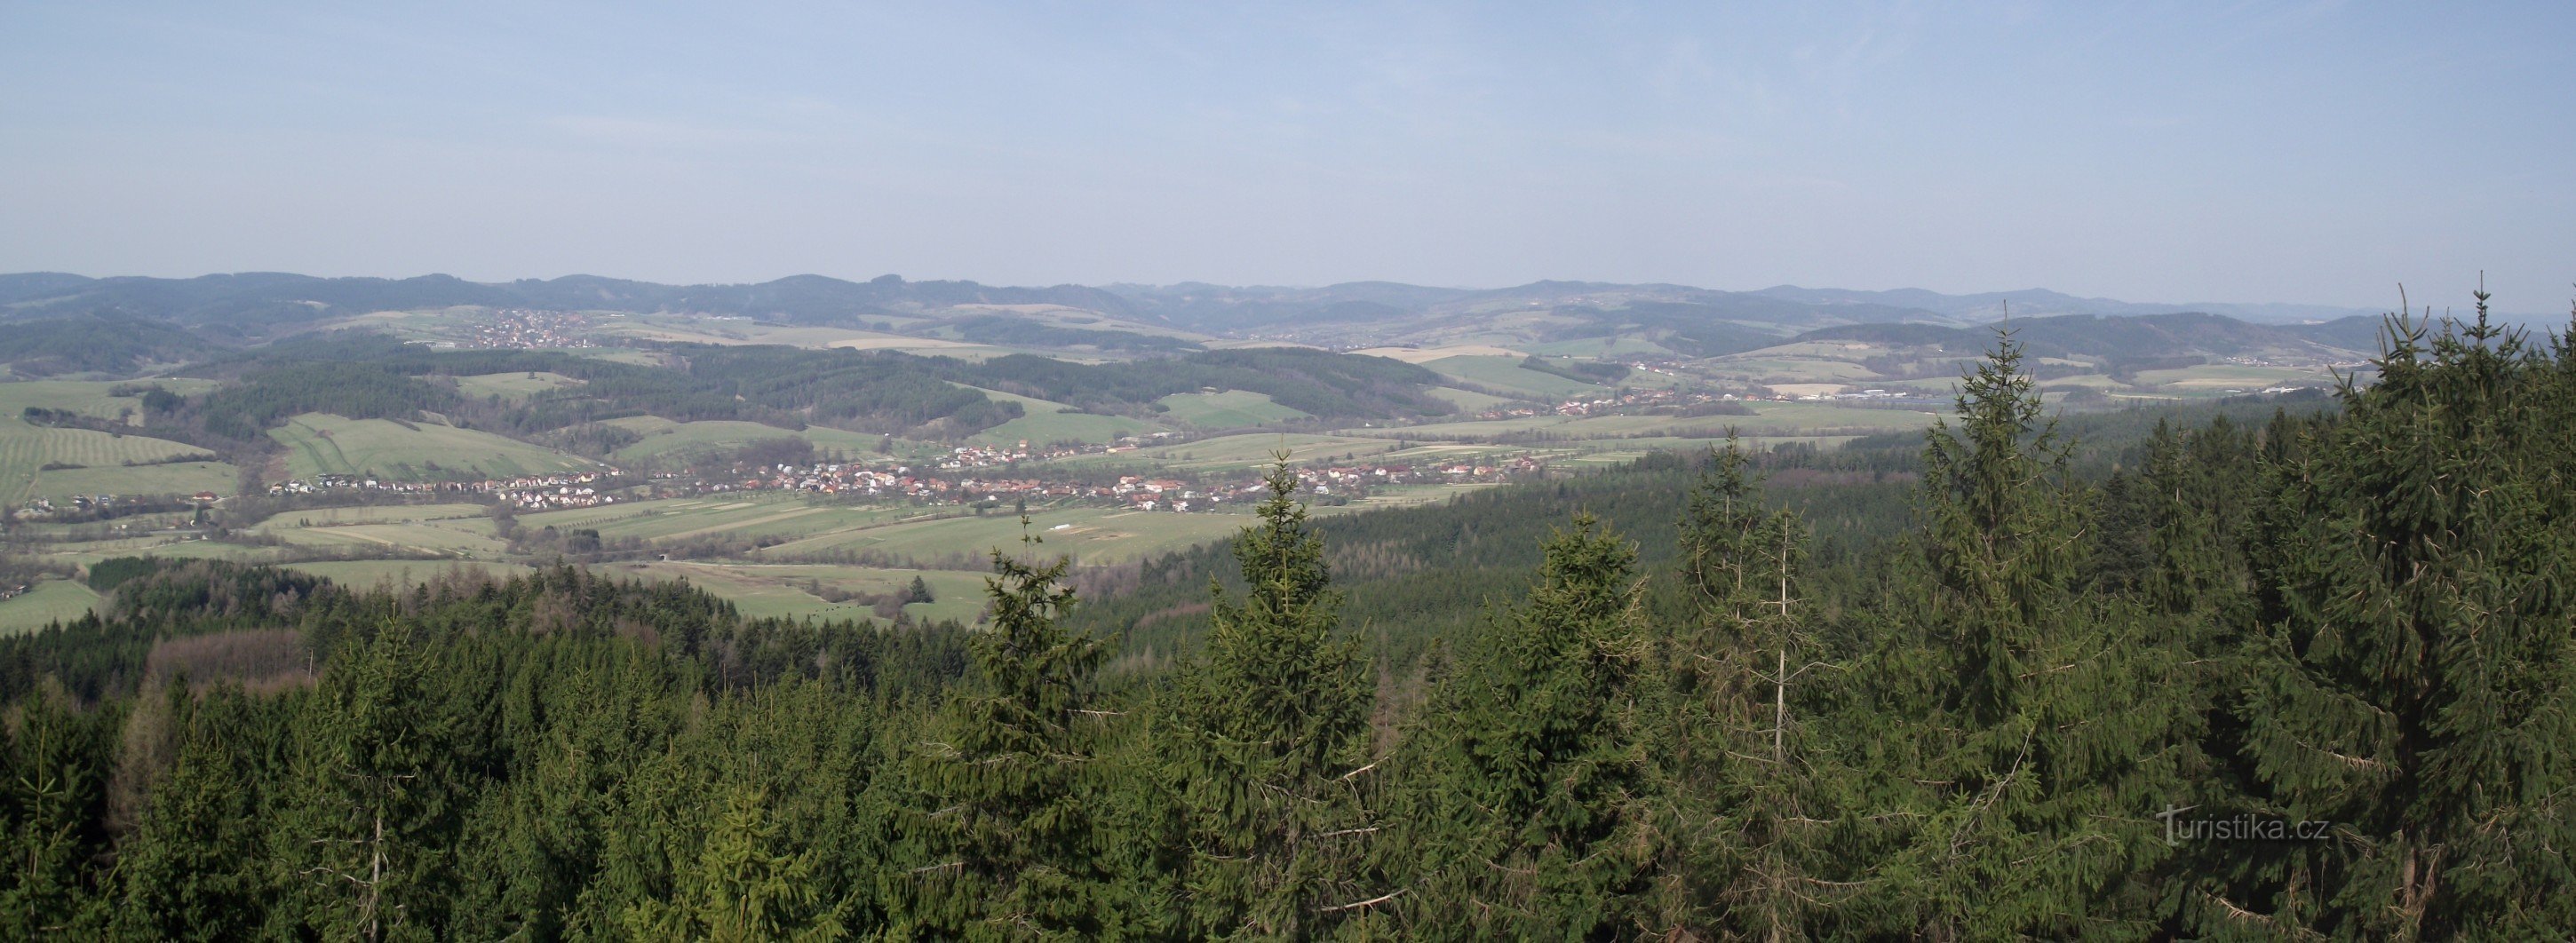 widok z wieży widokowej południowej Wołoszczyzny i wzgórz Vizovickich